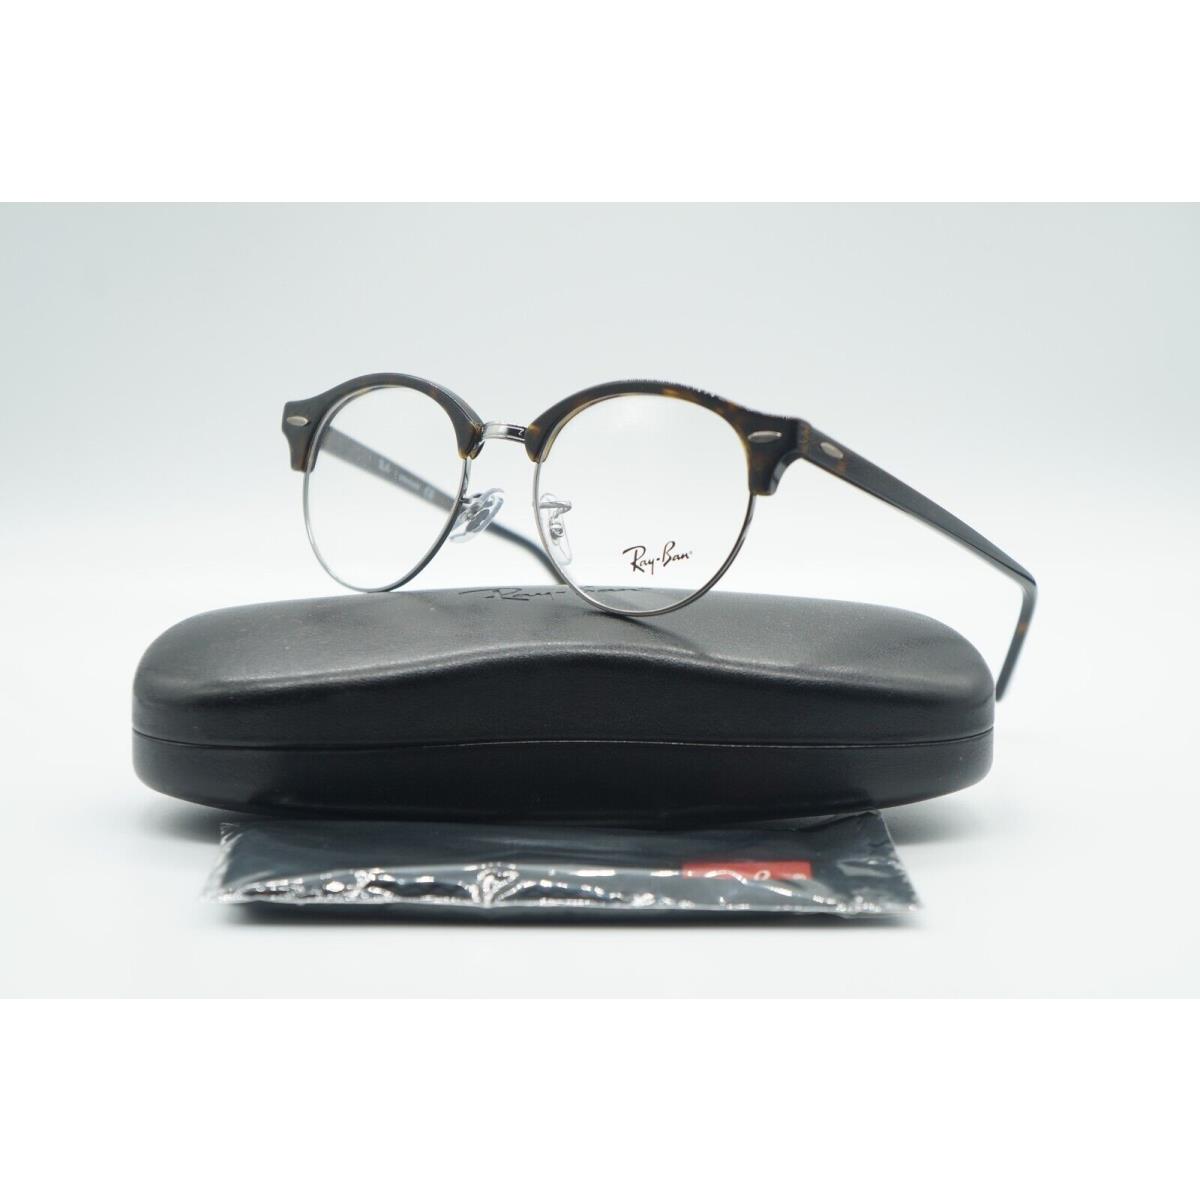 Ray-ban RB 4246-V 2012 Tortoise Frame Eyeglasses 49-19